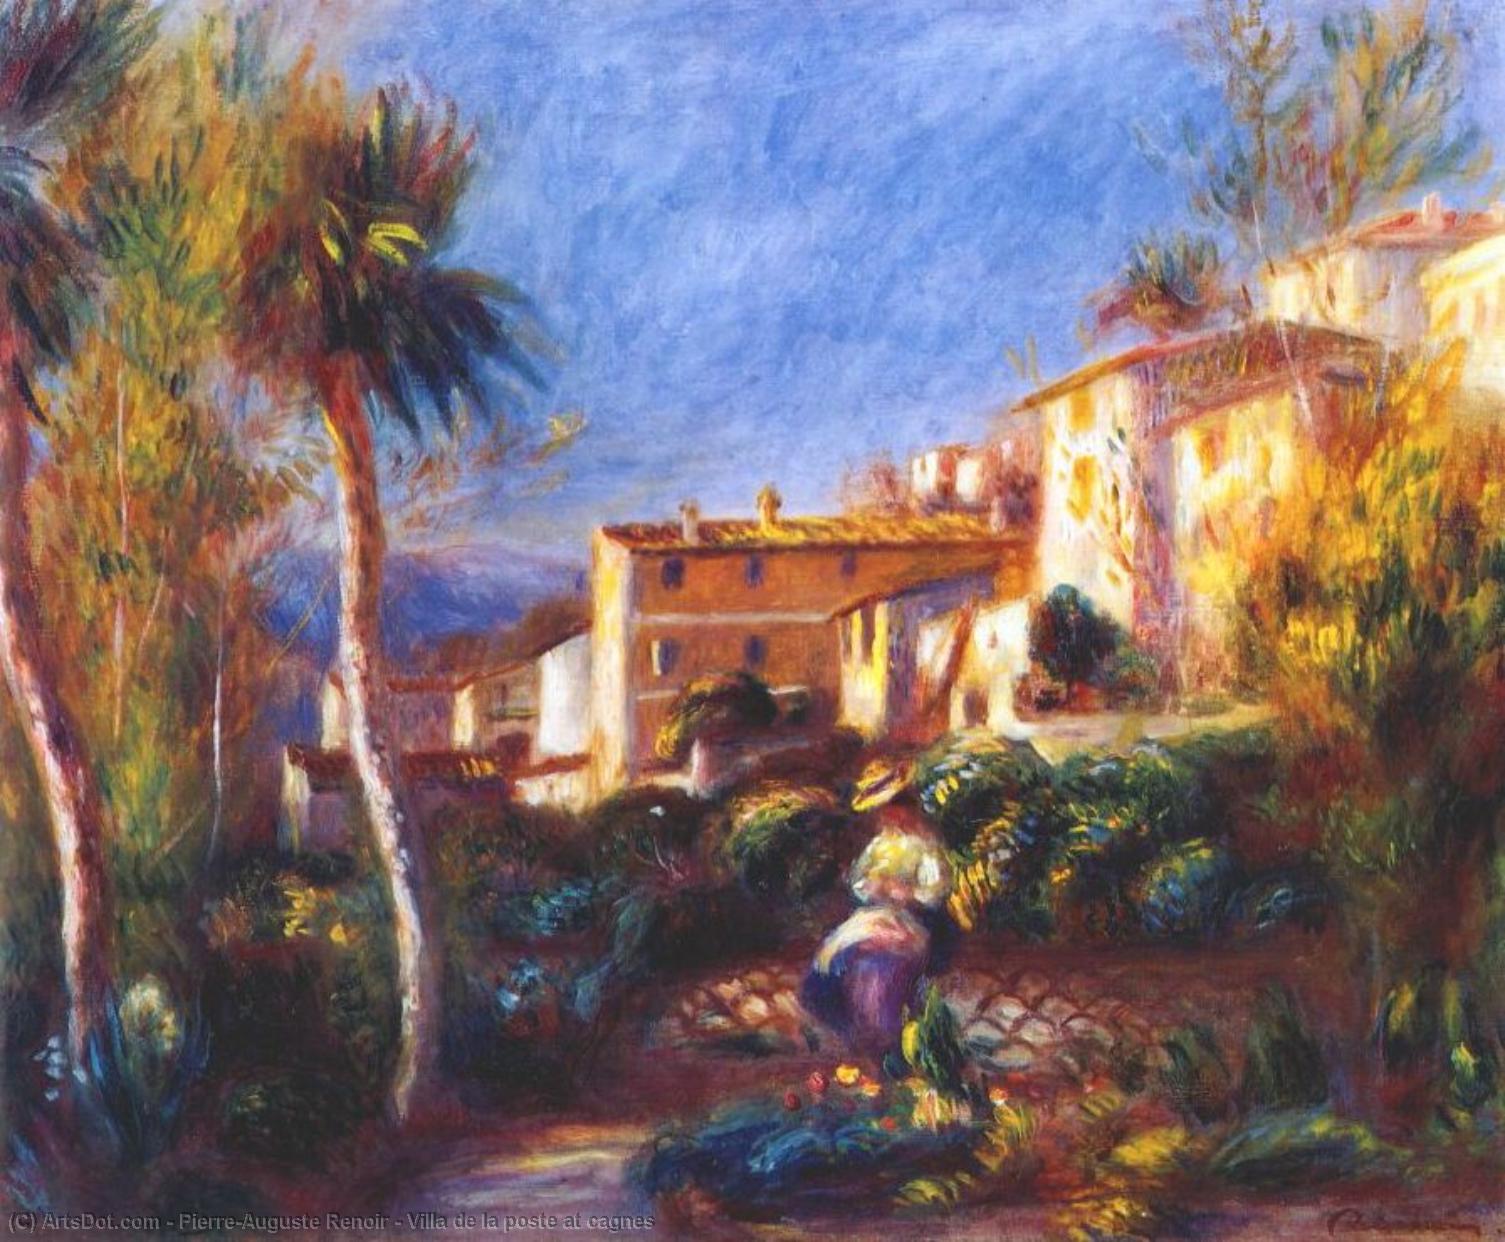 WikiOO.org - Encyclopedia of Fine Arts - Maleri, Artwork Pierre-Auguste Renoir - Villa de la poste at cagnes